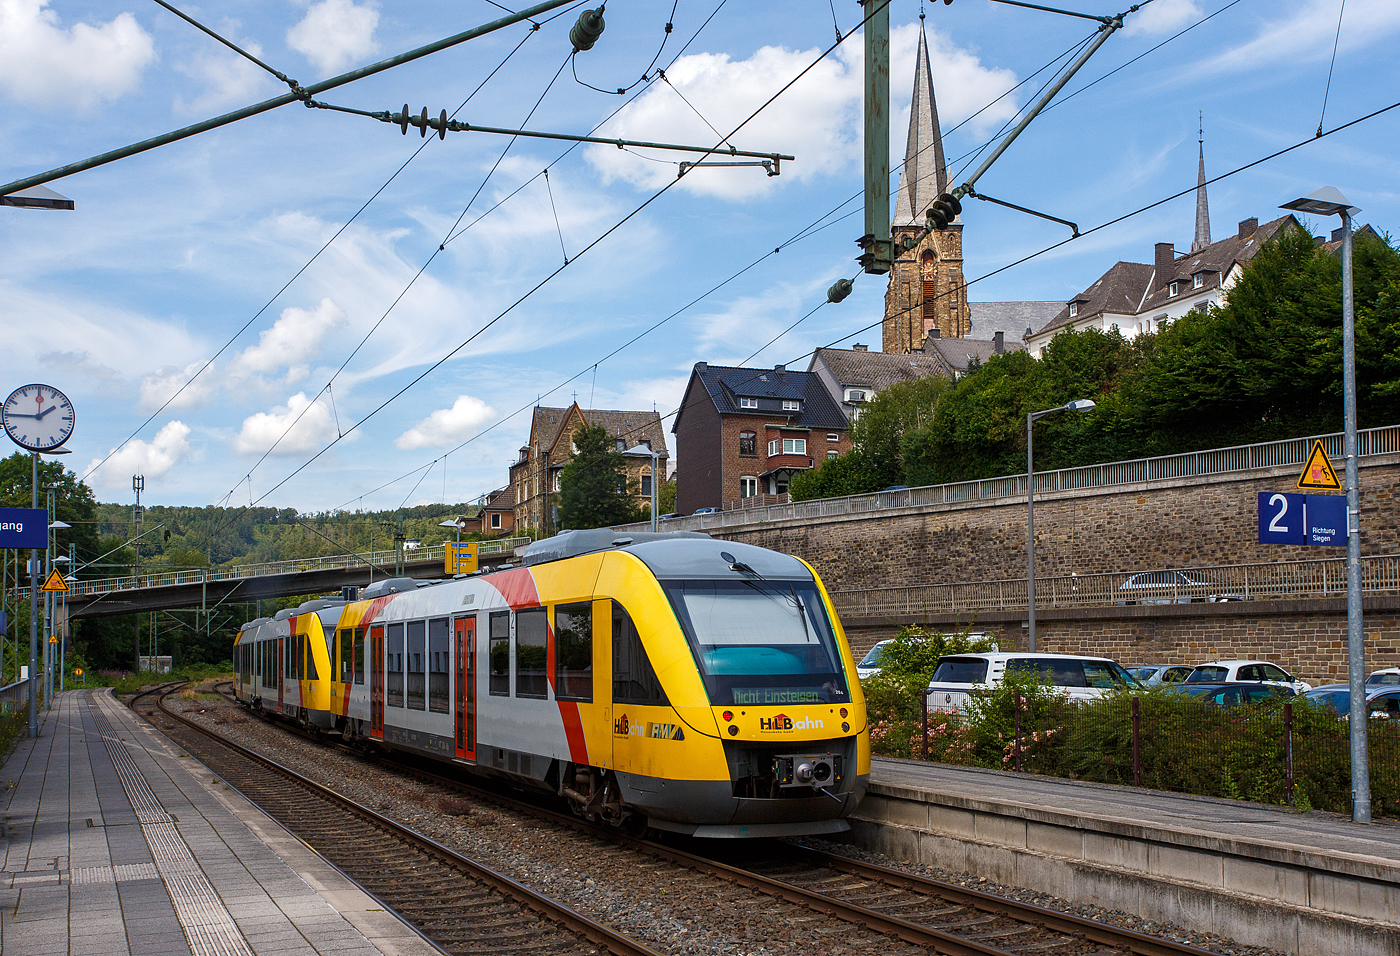 Ein Alstom Coradia LINT 58 bzw. zwei gekuppelte Alstom Coradia LINT 41 (BR 648)  bzw. 27 (BR 640) der HLB (Hessische Landesbahn), als RB 93  Rothaarbahn  (Betzdorf - Siegen - Kreuztal - Bad Berleburg), am 18 Juli 2024 beim Halt im Bahnhof Kirchen (Sieg). Vorne der VT 264 (95 80 0648 664-0 D-HEB / 95 80 0648 164-1 D-HEB) ein LINT 41 und hinten der VT 204 (95 80 0640 104-5 D-HEB) ein LINT 27.

Beide LINT wurden 2004 von der ALSTOM Transport Deutschland GmbH (vormals LHB - Linke-Hofmann-Busch GmbH) in Salzgitter-Watenstedt für die vectus Verkehrsgesellschaft mbH gebaut, mit dem Fahrplanwechsel am 14.12.2014 wurden alle Fahrzeuge der vectus nun Eigentum der HLB, die Hessische Landesbahn hatte 74,9% der Gesellschaftsanteile. Der LINT 41 wurde unter der Fabriknummer 1188-014 gebaut, der LINT 27 unter der Fabriknummer 1187-004.